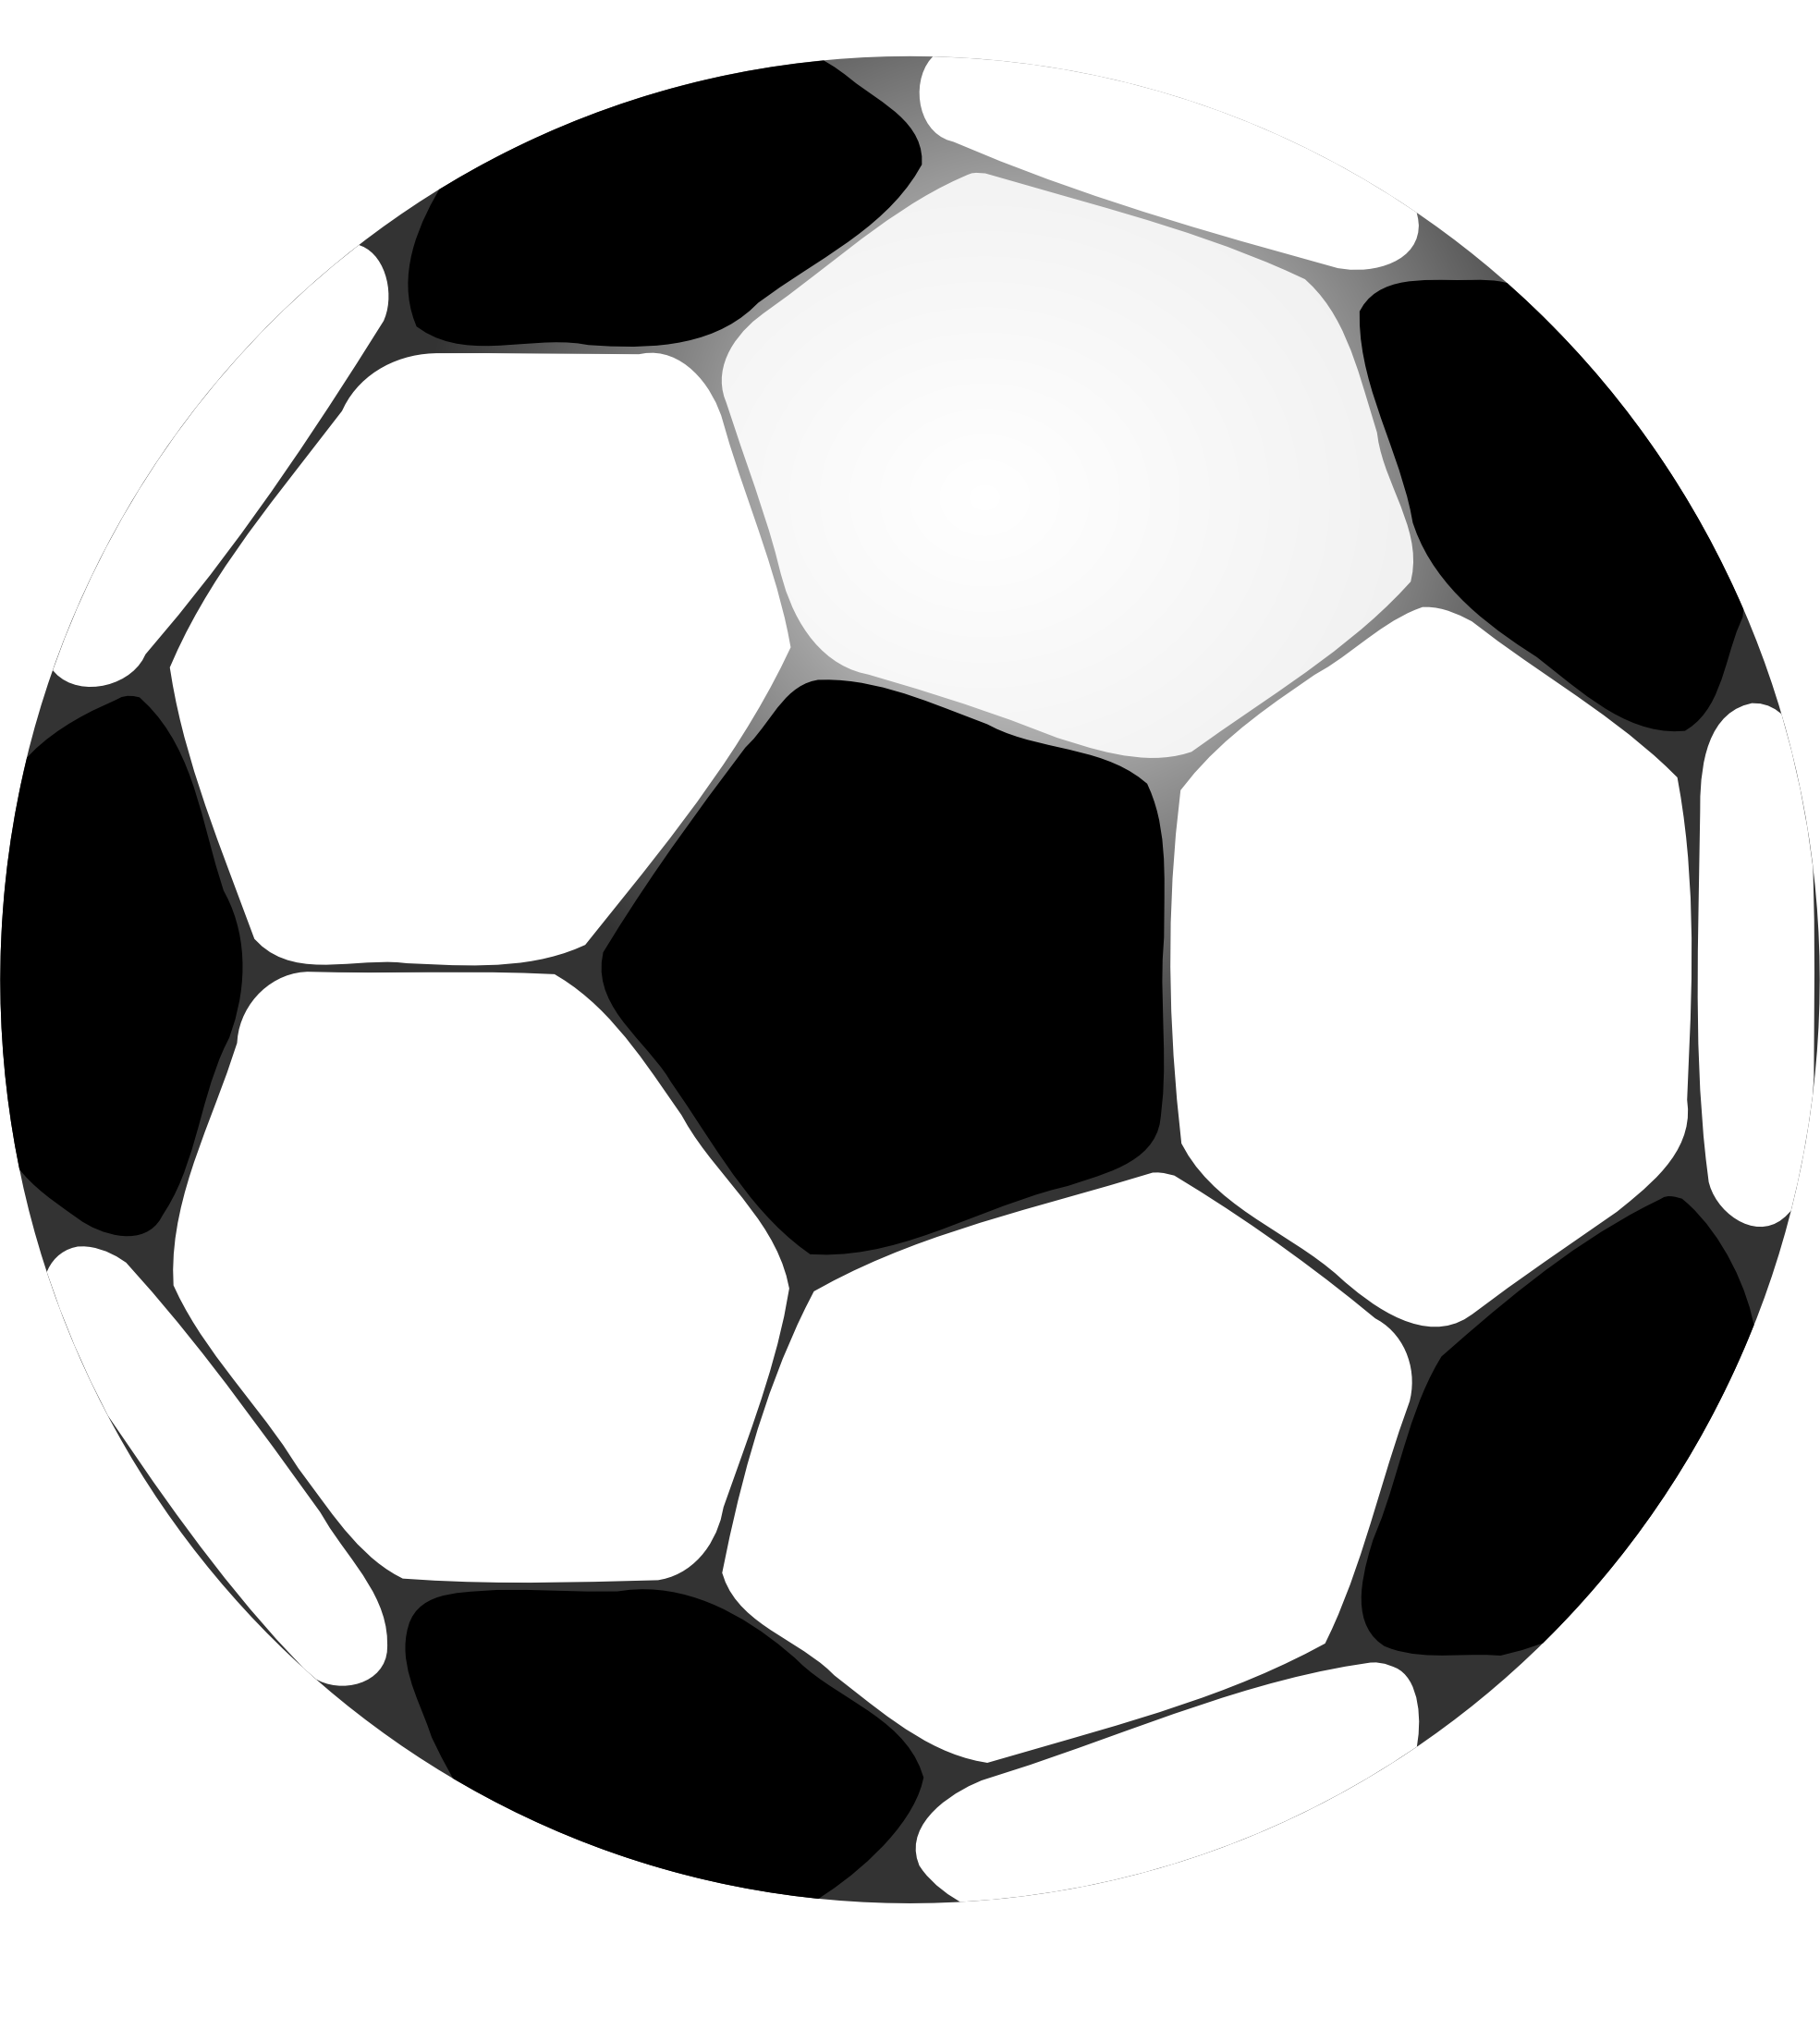 Clip Art: football futbolo soccer ball Squiggly SVG